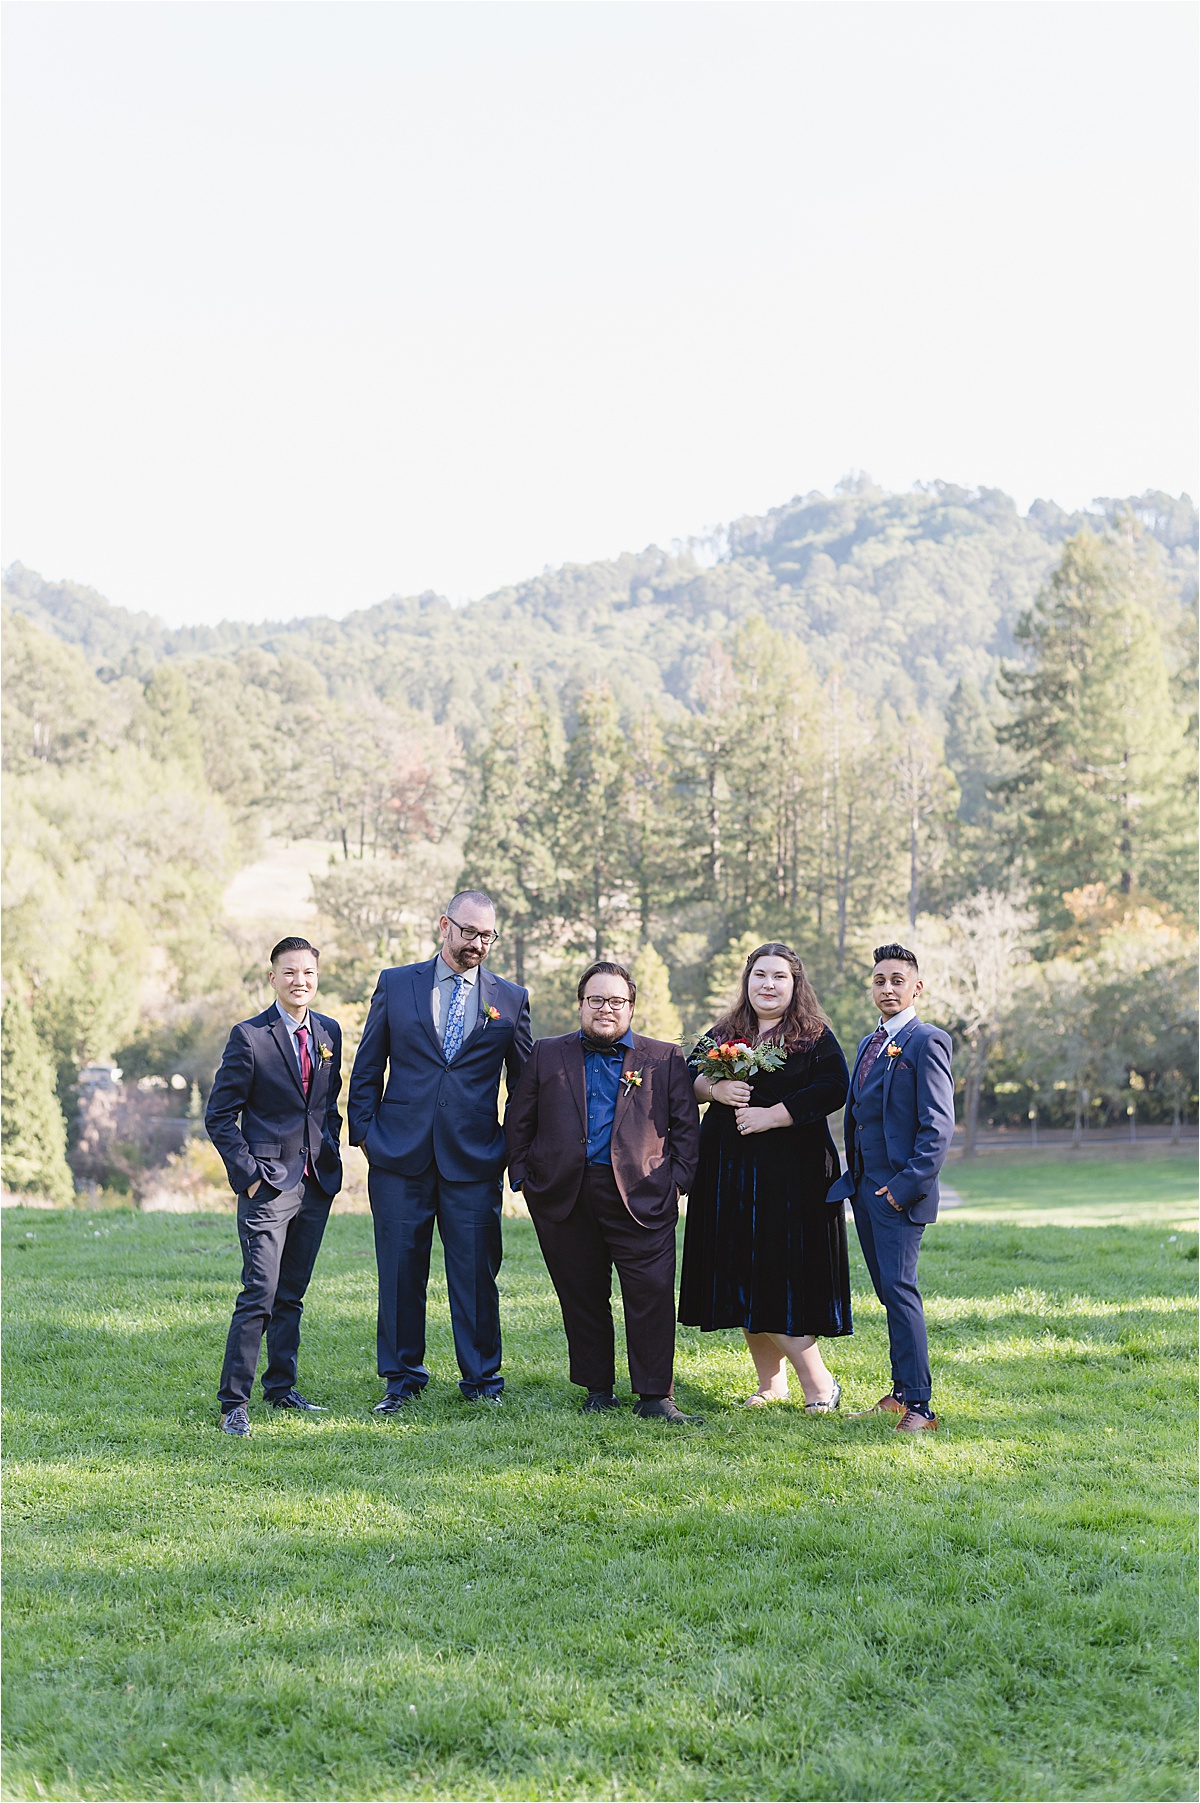 Wedding at The Braziian Room Tilden Regional Park Berkeley California Vincent + Angelica by Jen Vazquez Photography